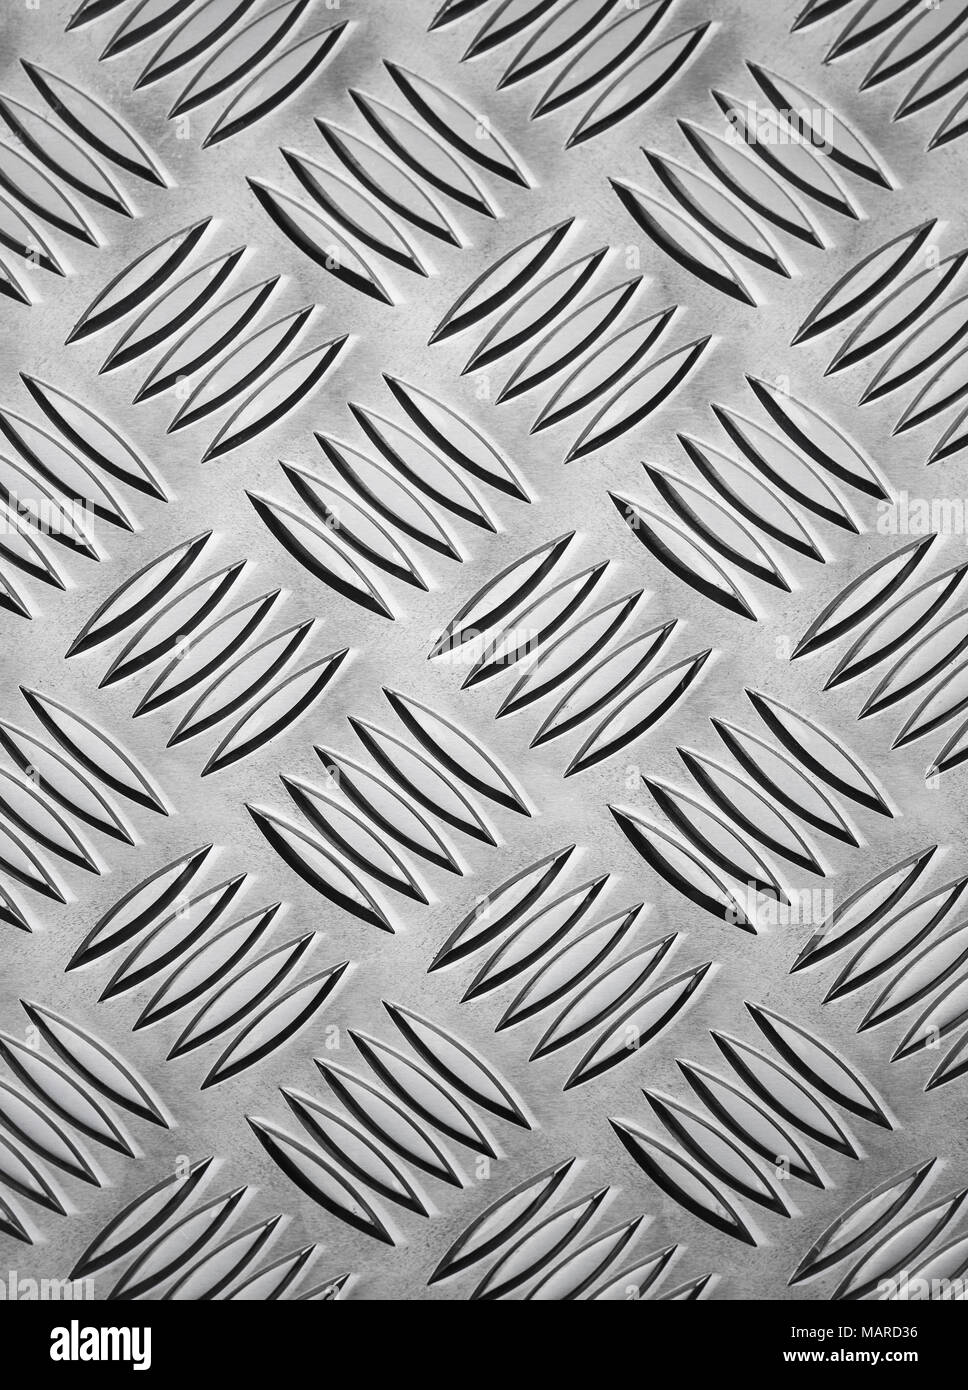 Abstract pattern fabriqués à partir des métaux en relief antidérapant. Banque D'Images